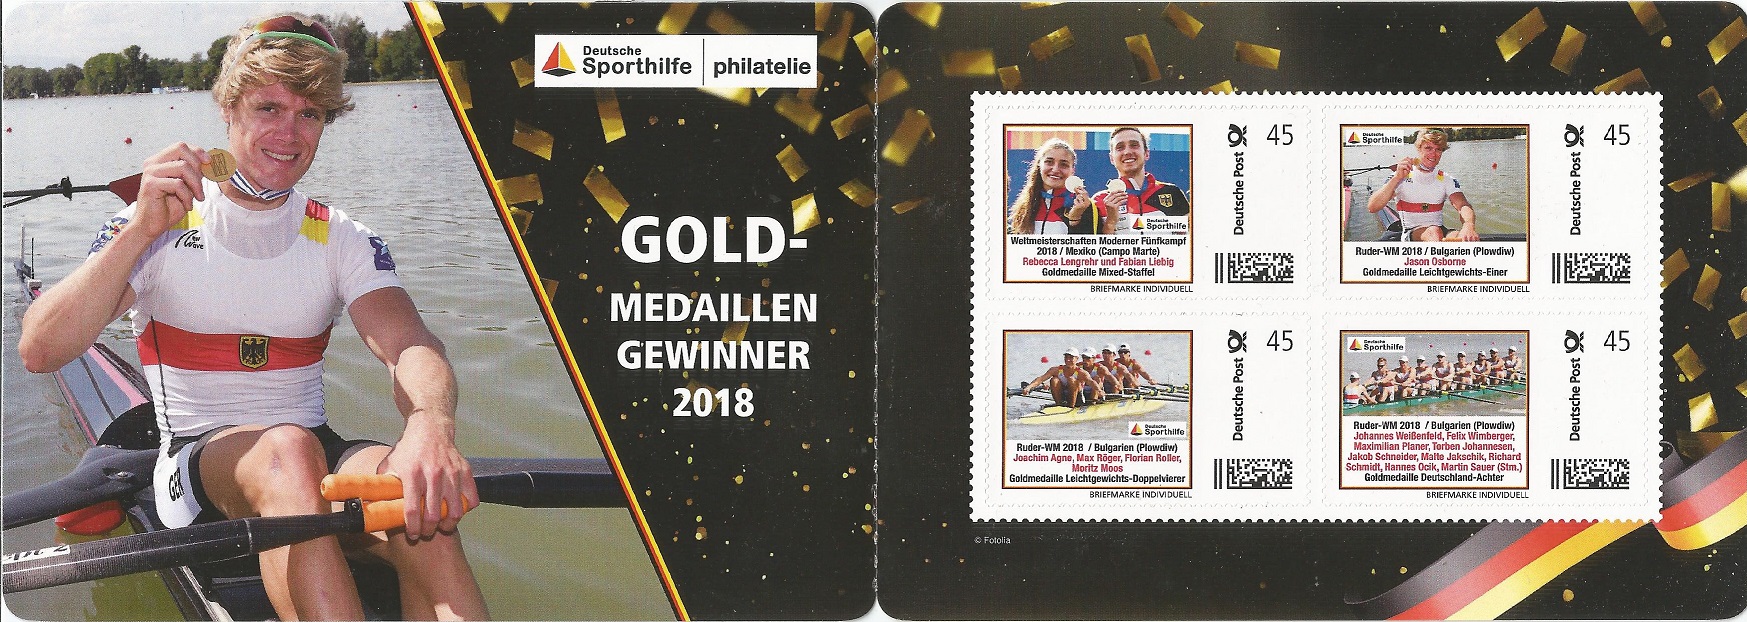 Stamp GER 2018 Deutsch Sporthilfe booklet German gold medal winners 2018